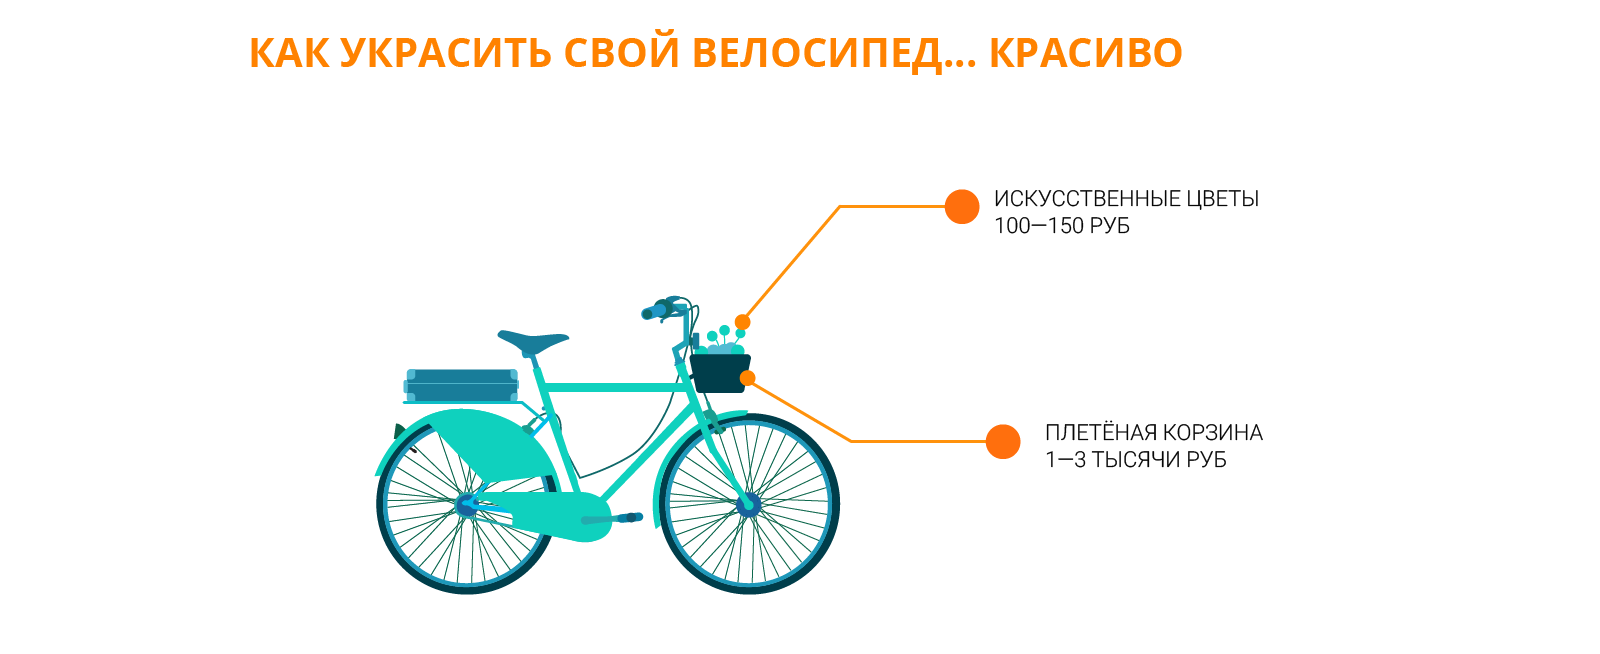 Как можно украсить (тюнинговать) велосипед Velik-Shop